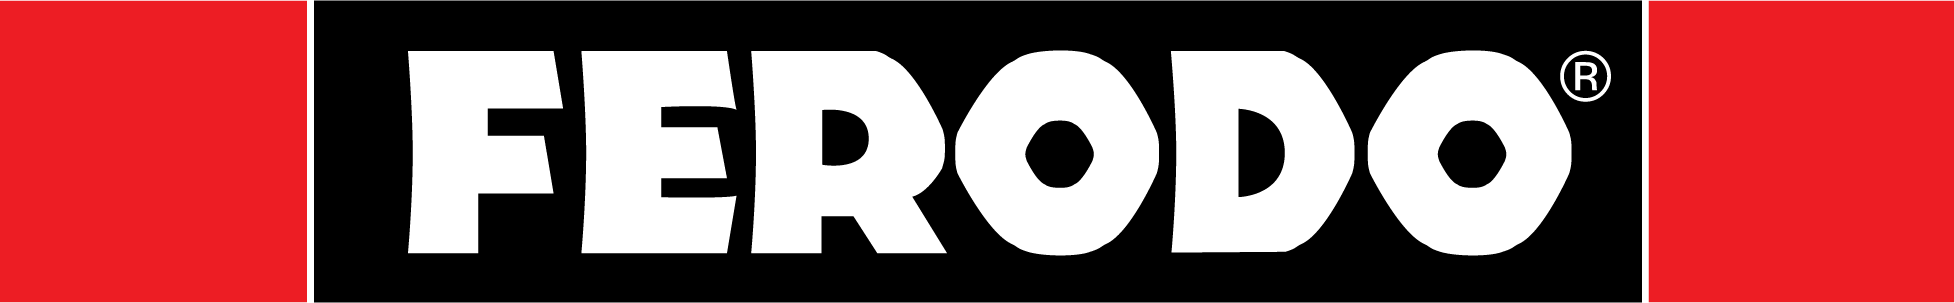 Logo Ferodo - il freno - Ricambi Veicoli Industriali, autocarri e bus